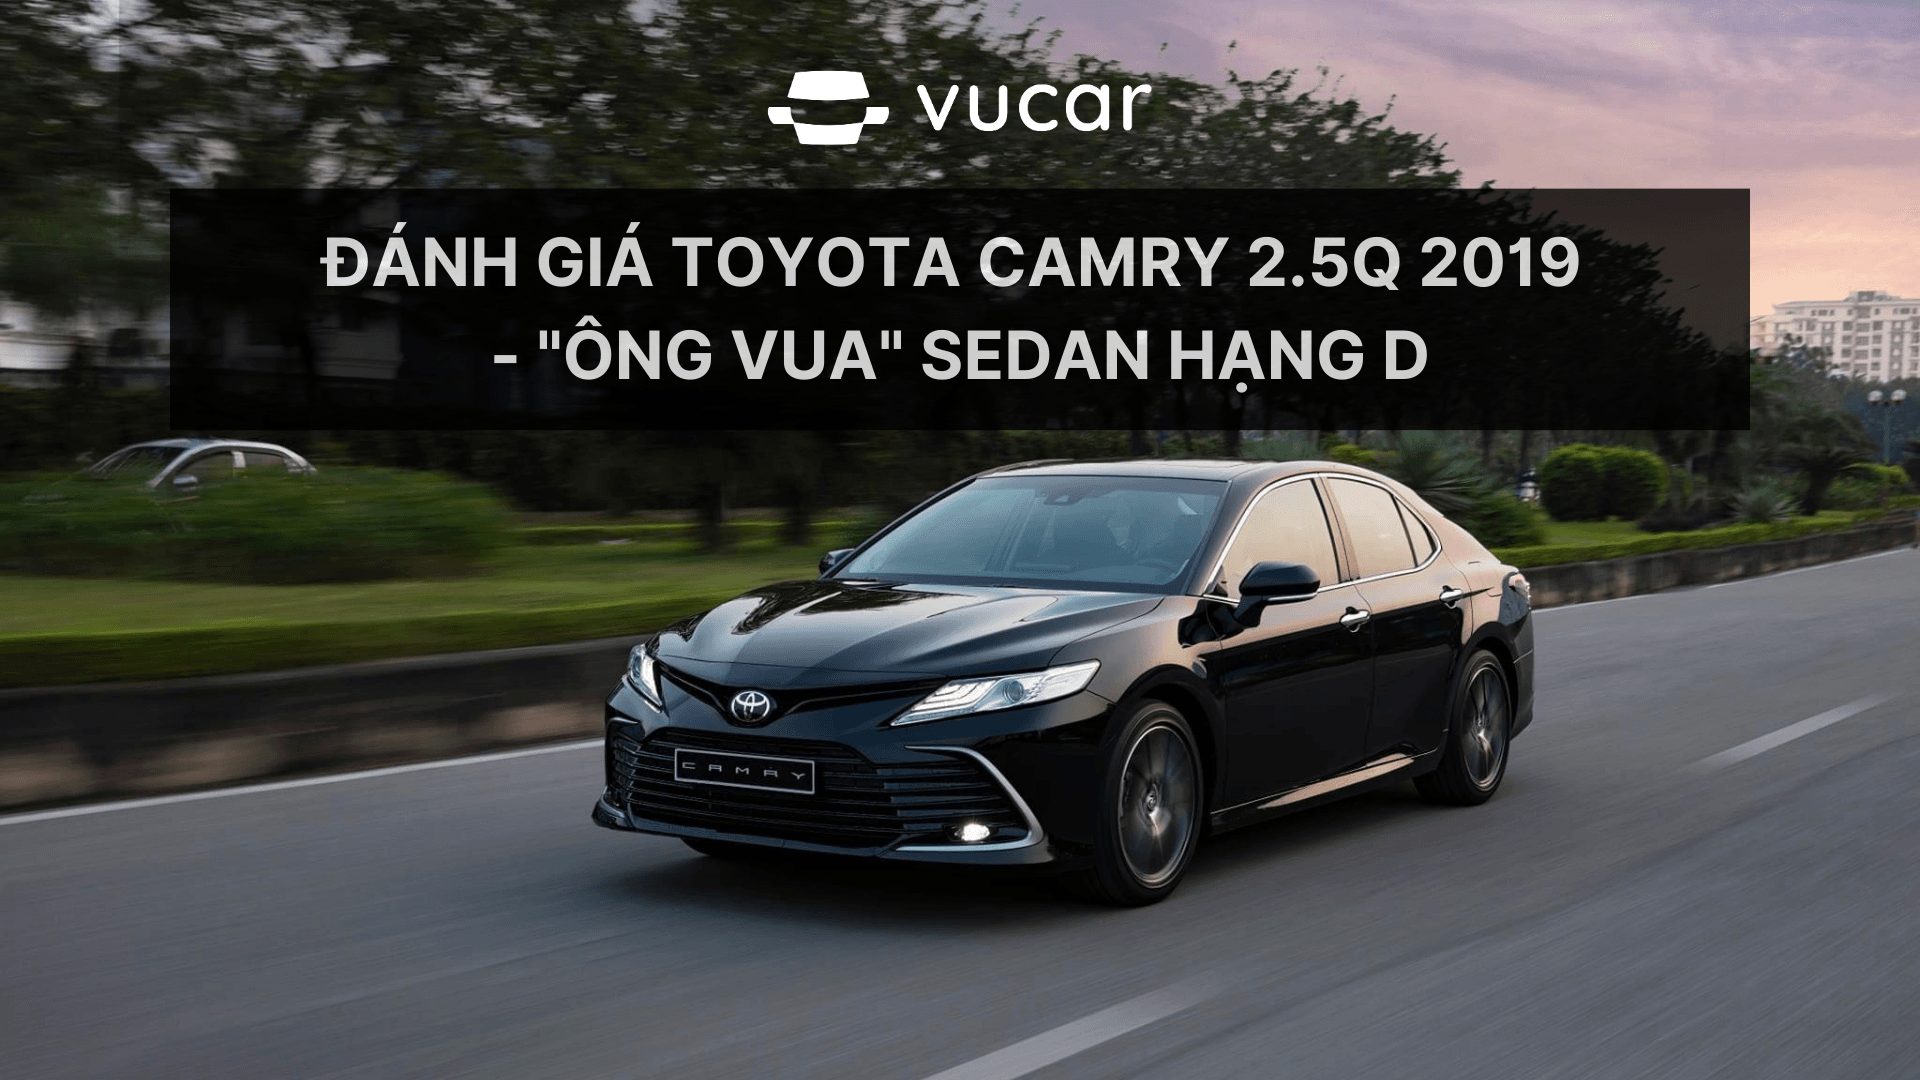 Đánh giá Toyota Camry 2.5Q 2019  - "ông vua" sedan hạng D